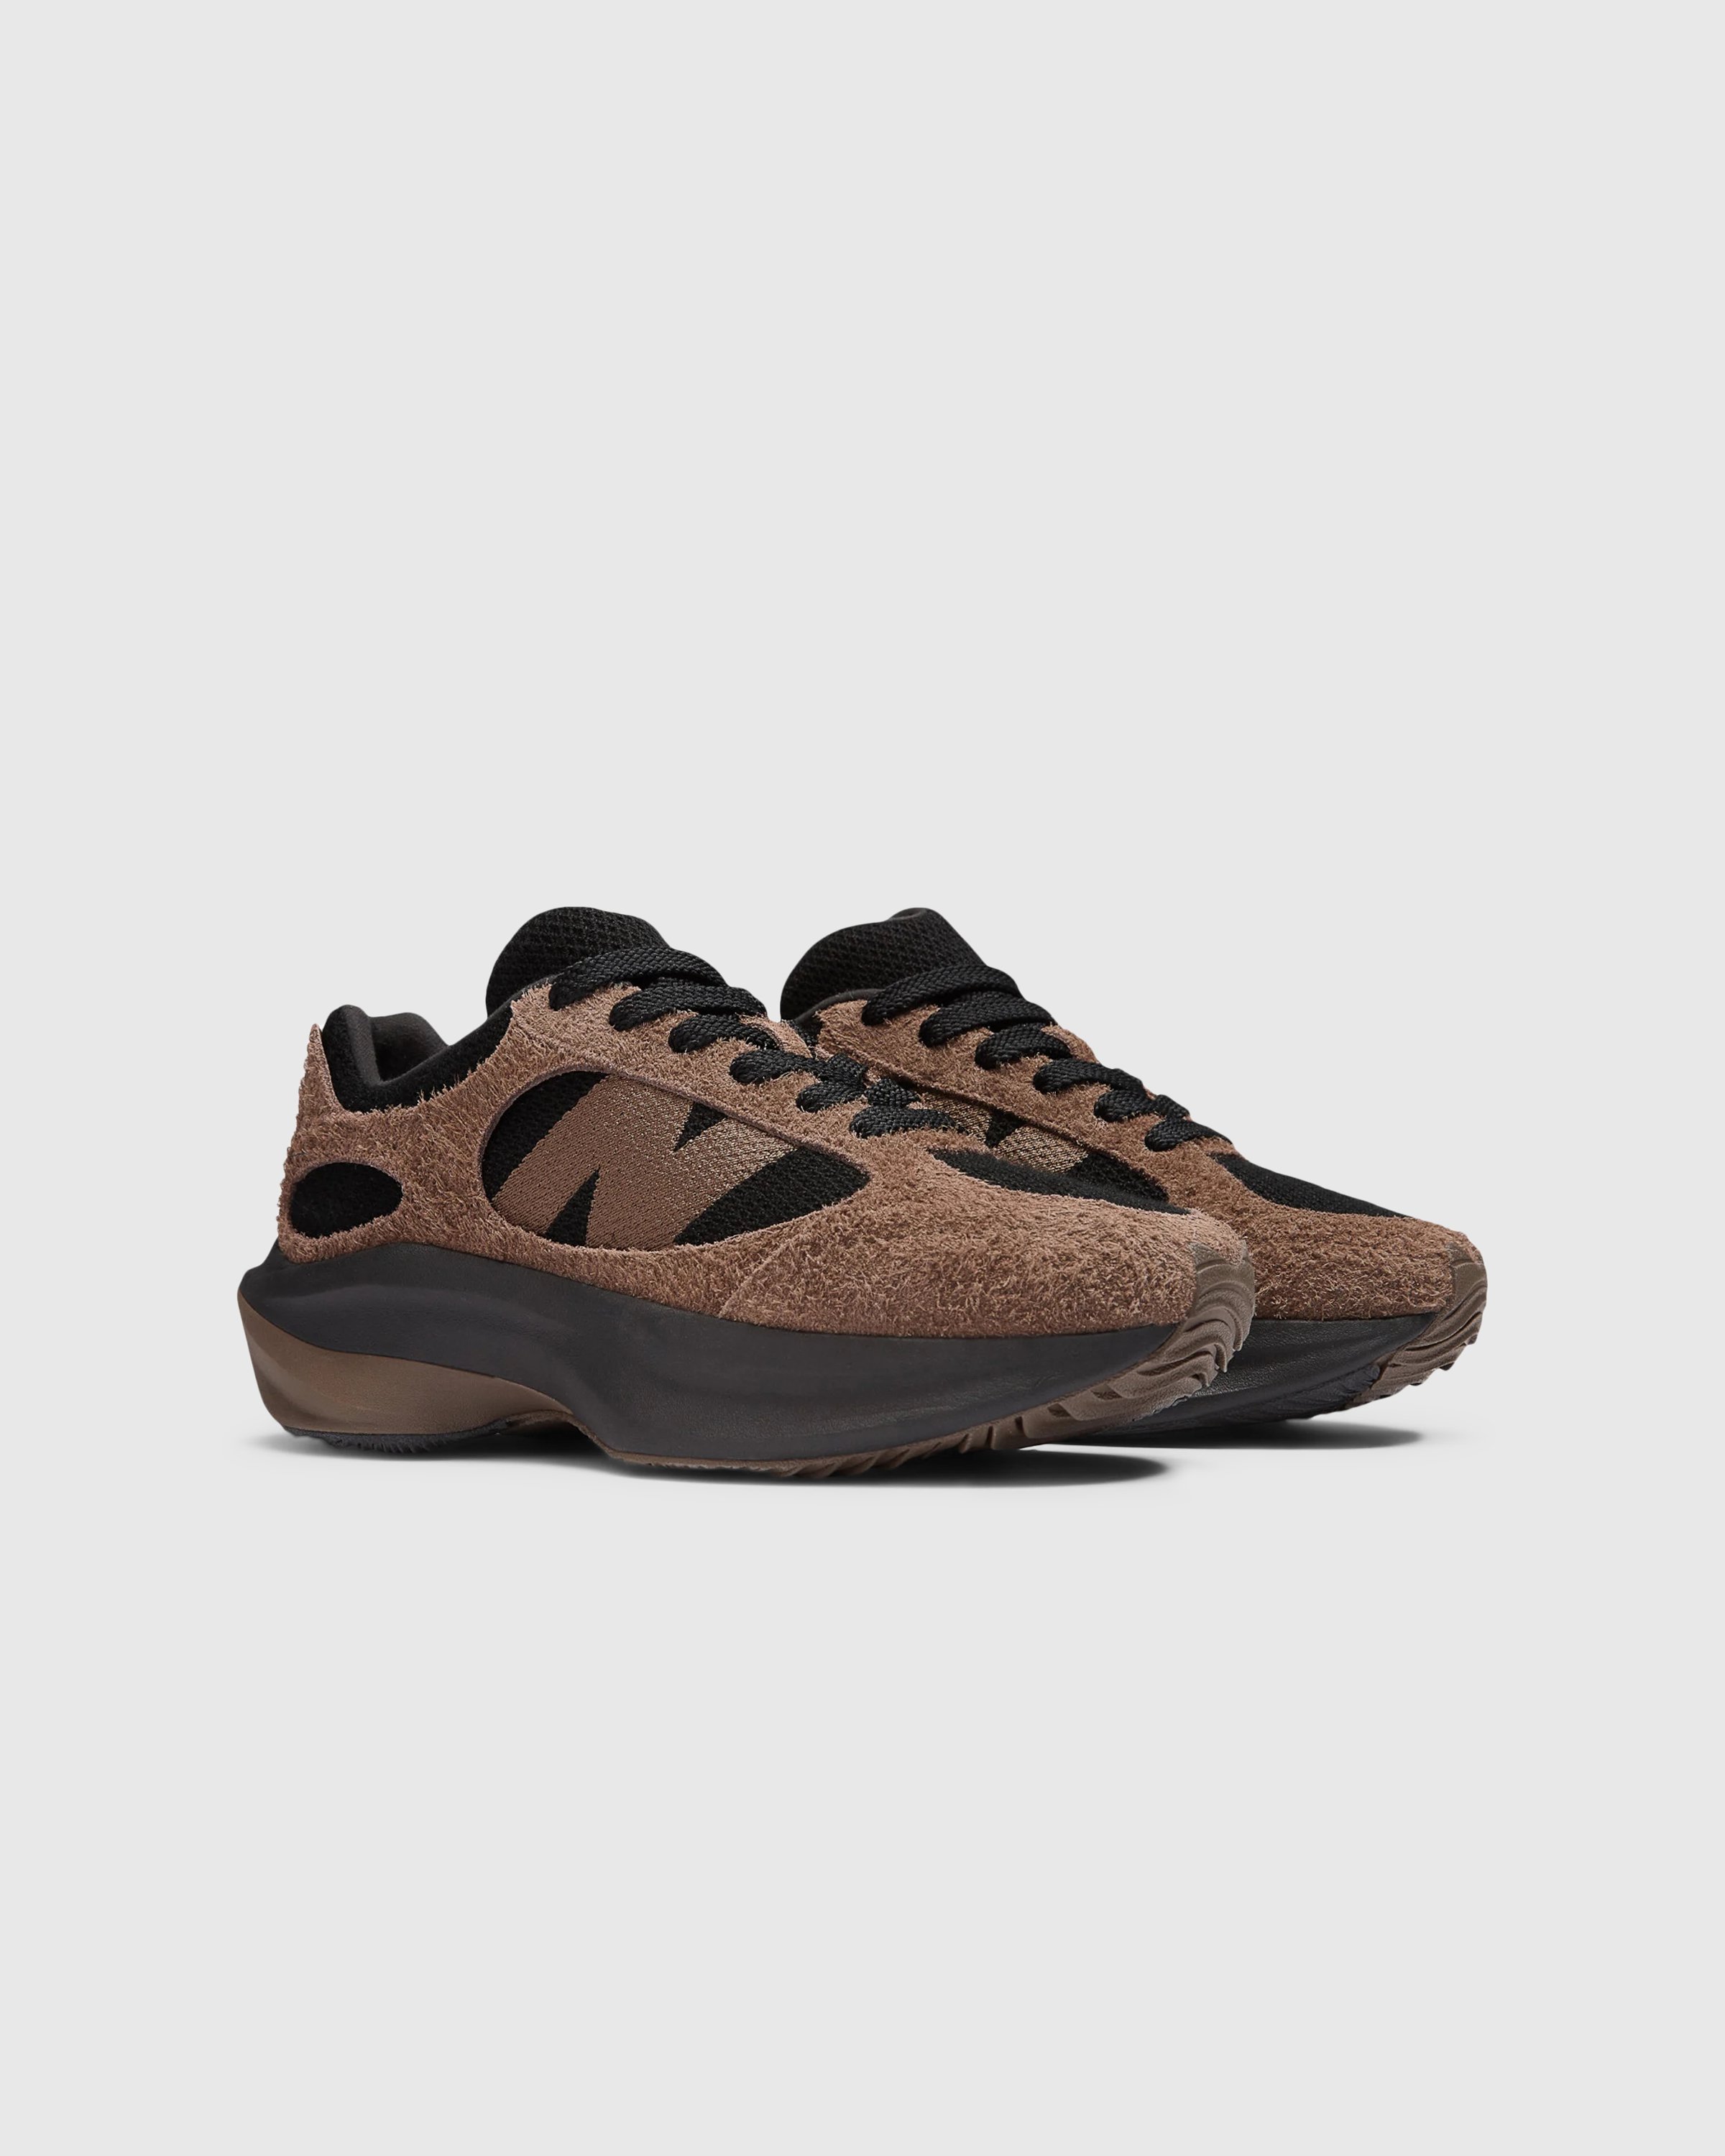 New Balance - WRPD Runner Dark Mushroom - Footwear - Brown - Image 3